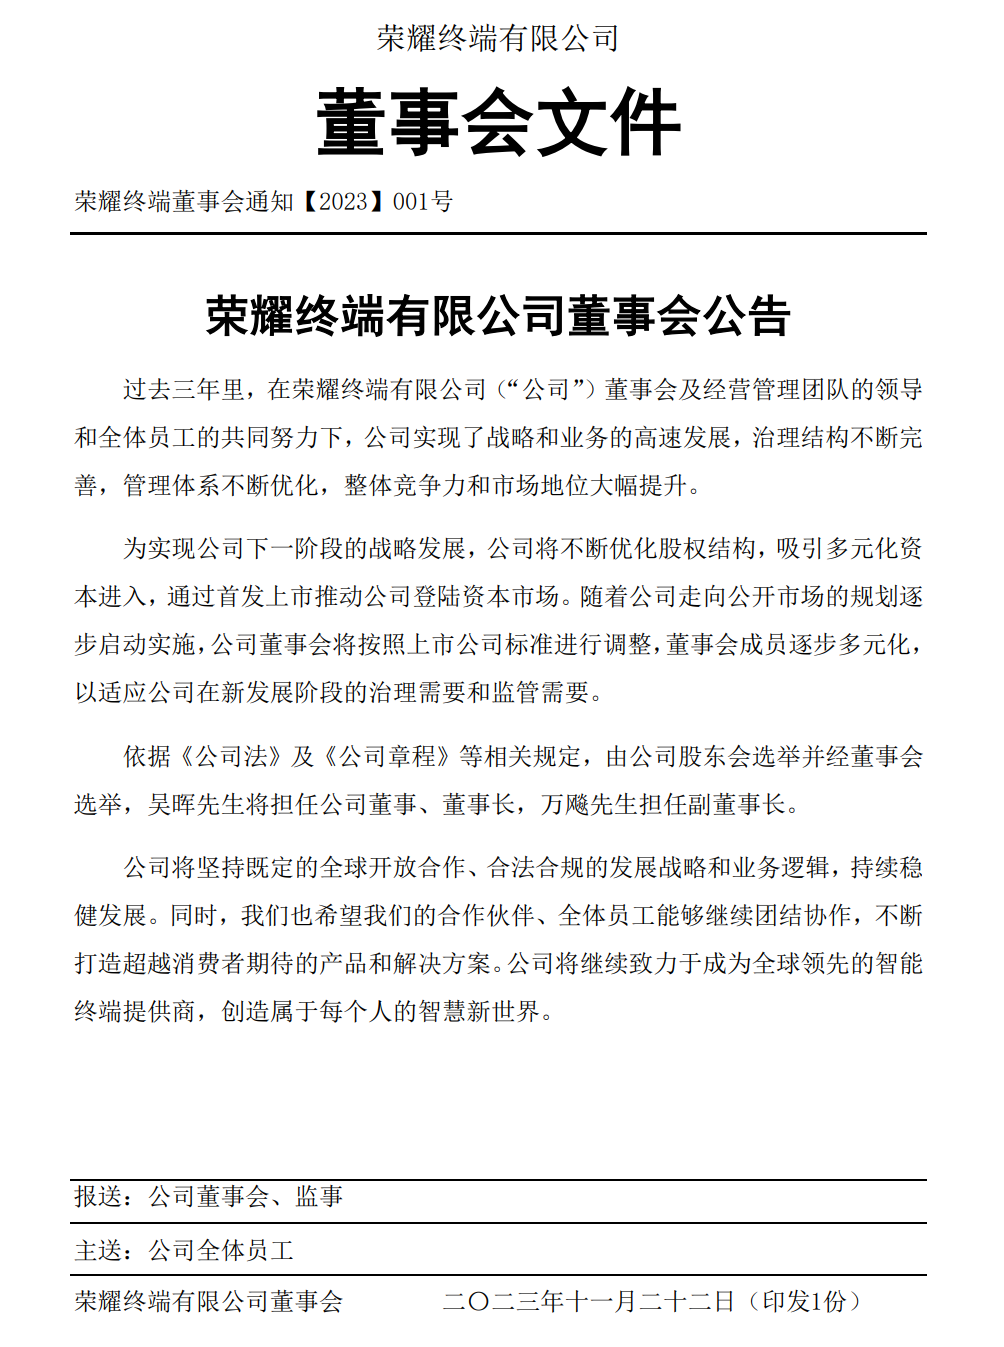 吴晖将担任公司董事、董事长，推动荣耀通过首发上市进军资本市场